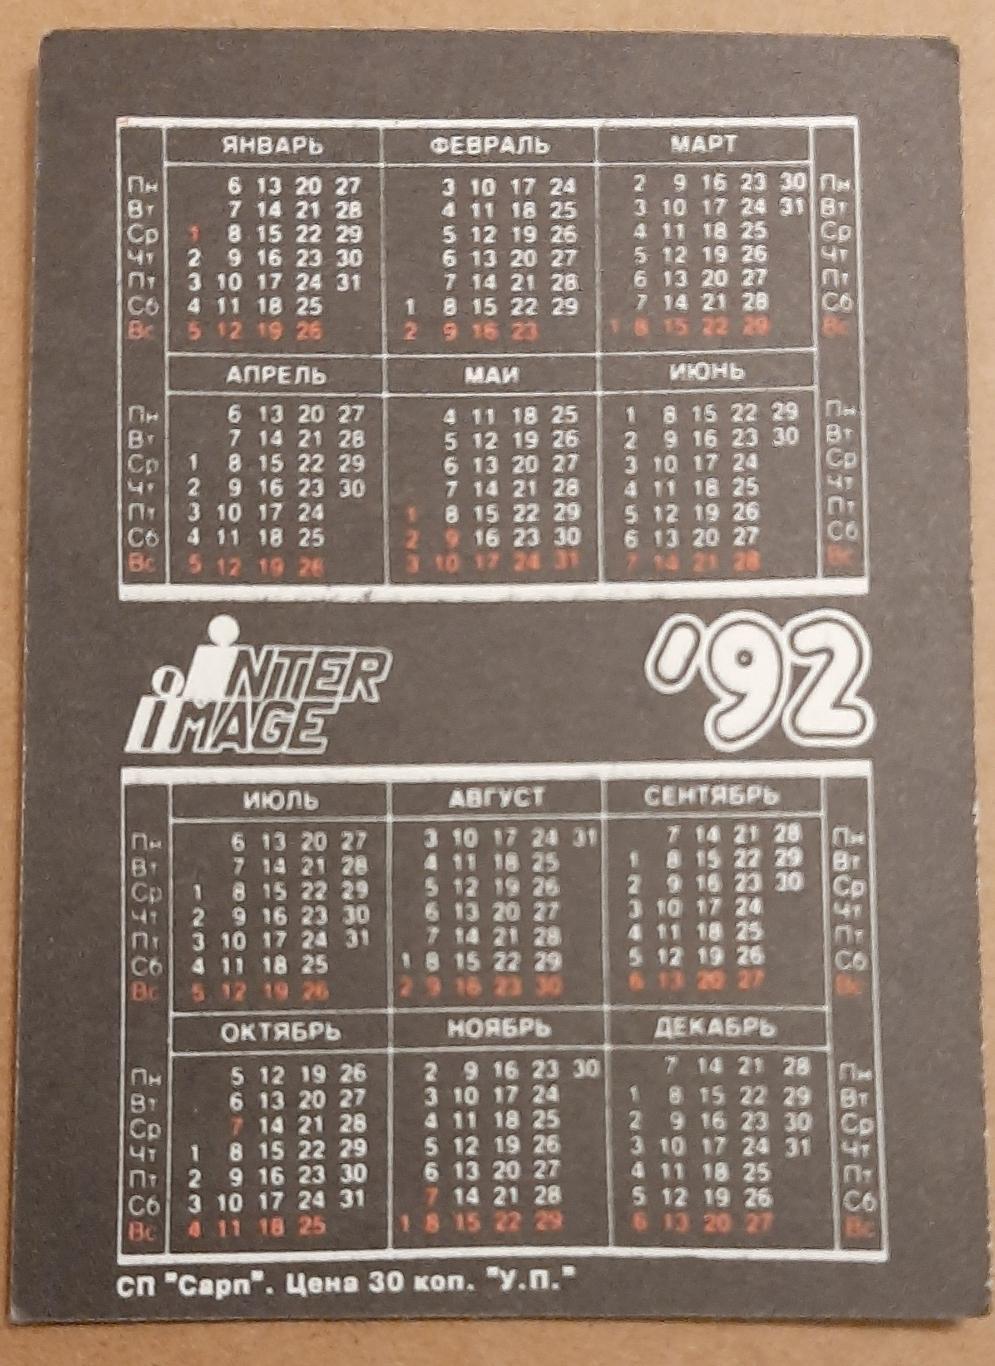 Календарик Inter image 1992г. 1